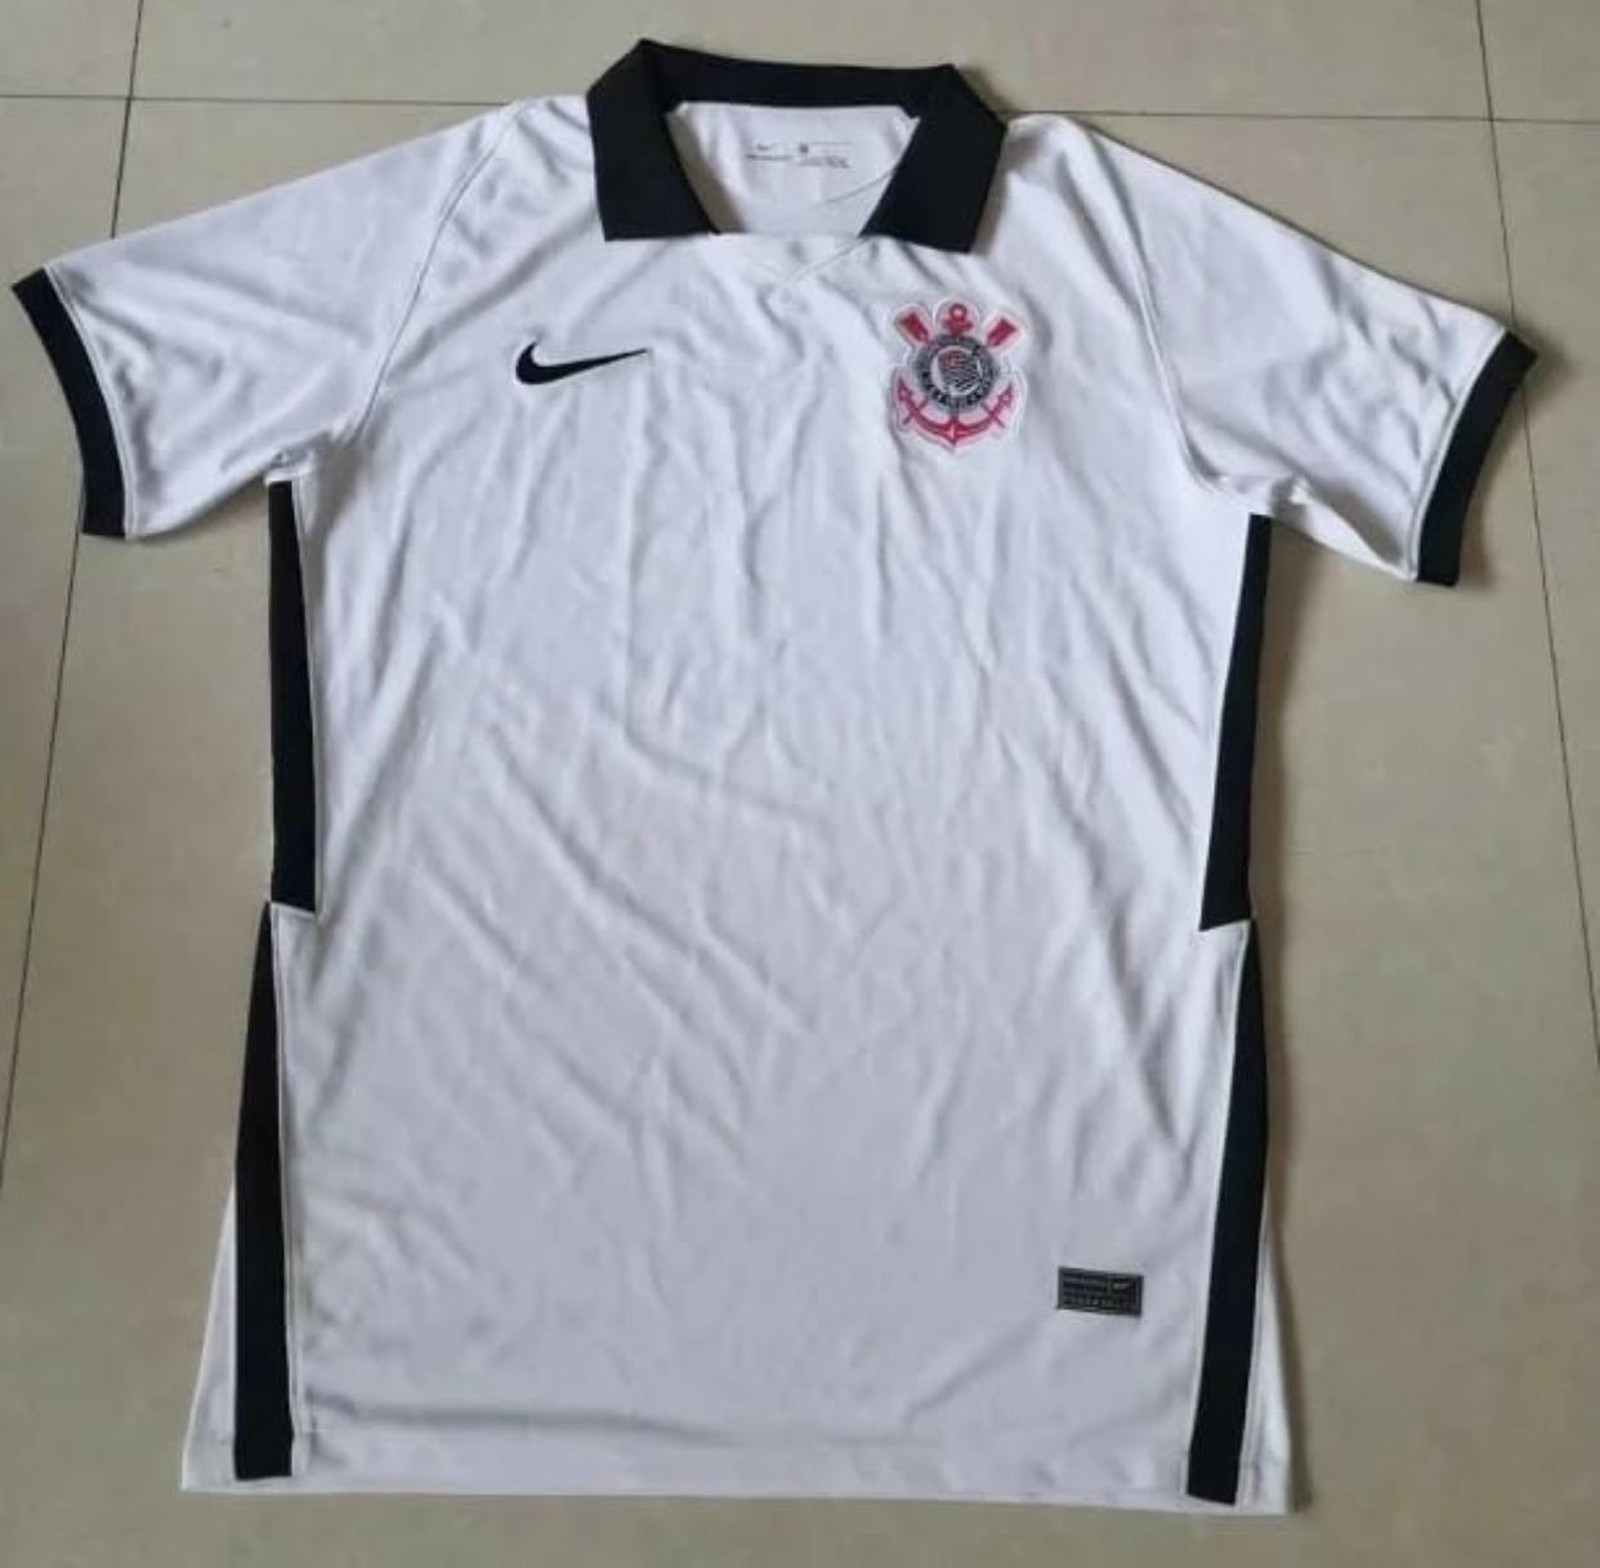 Novas camisas do Nacional-PAR 2020 Kyrios Sport » Mantos do Futebol